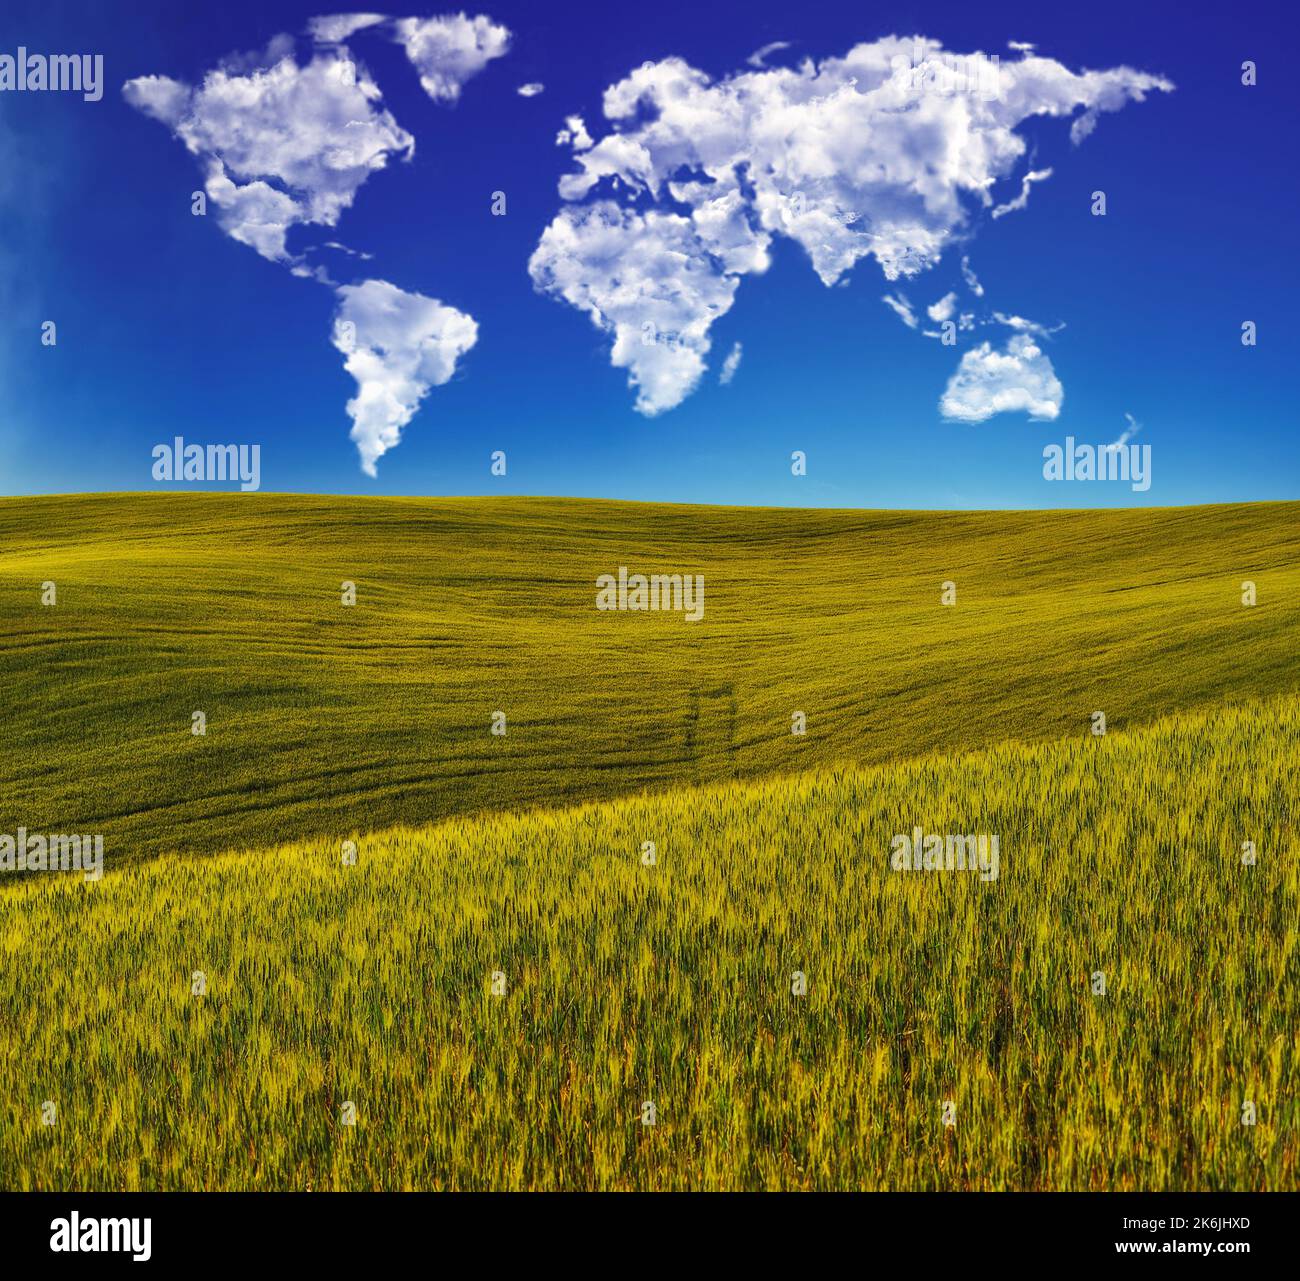 Wolken in Form einer Weltkarte über einem grünen Feld. Konzeptionelle Landschaft. Hügeliges Feld Stockfoto